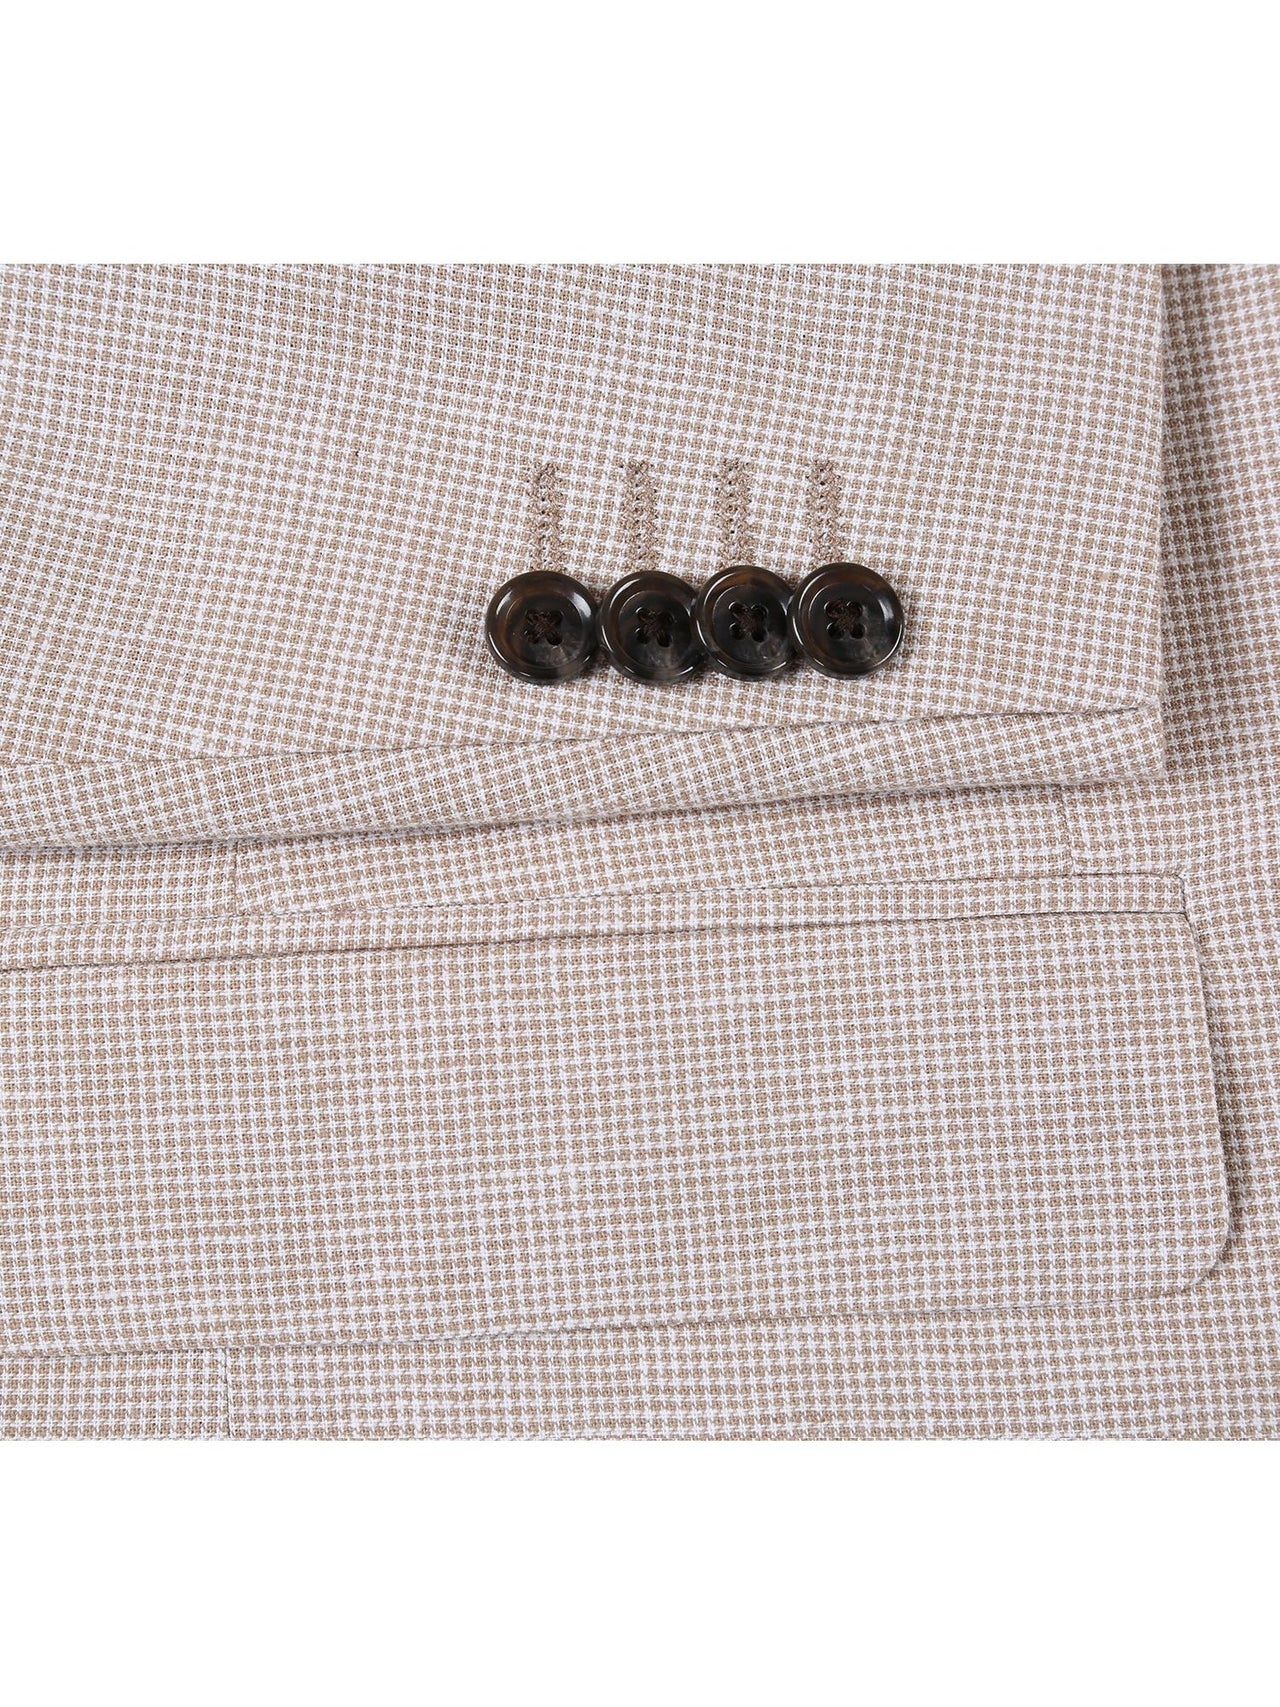 Men's Classic Fit Blazer Linen/Cotton Sport Coat